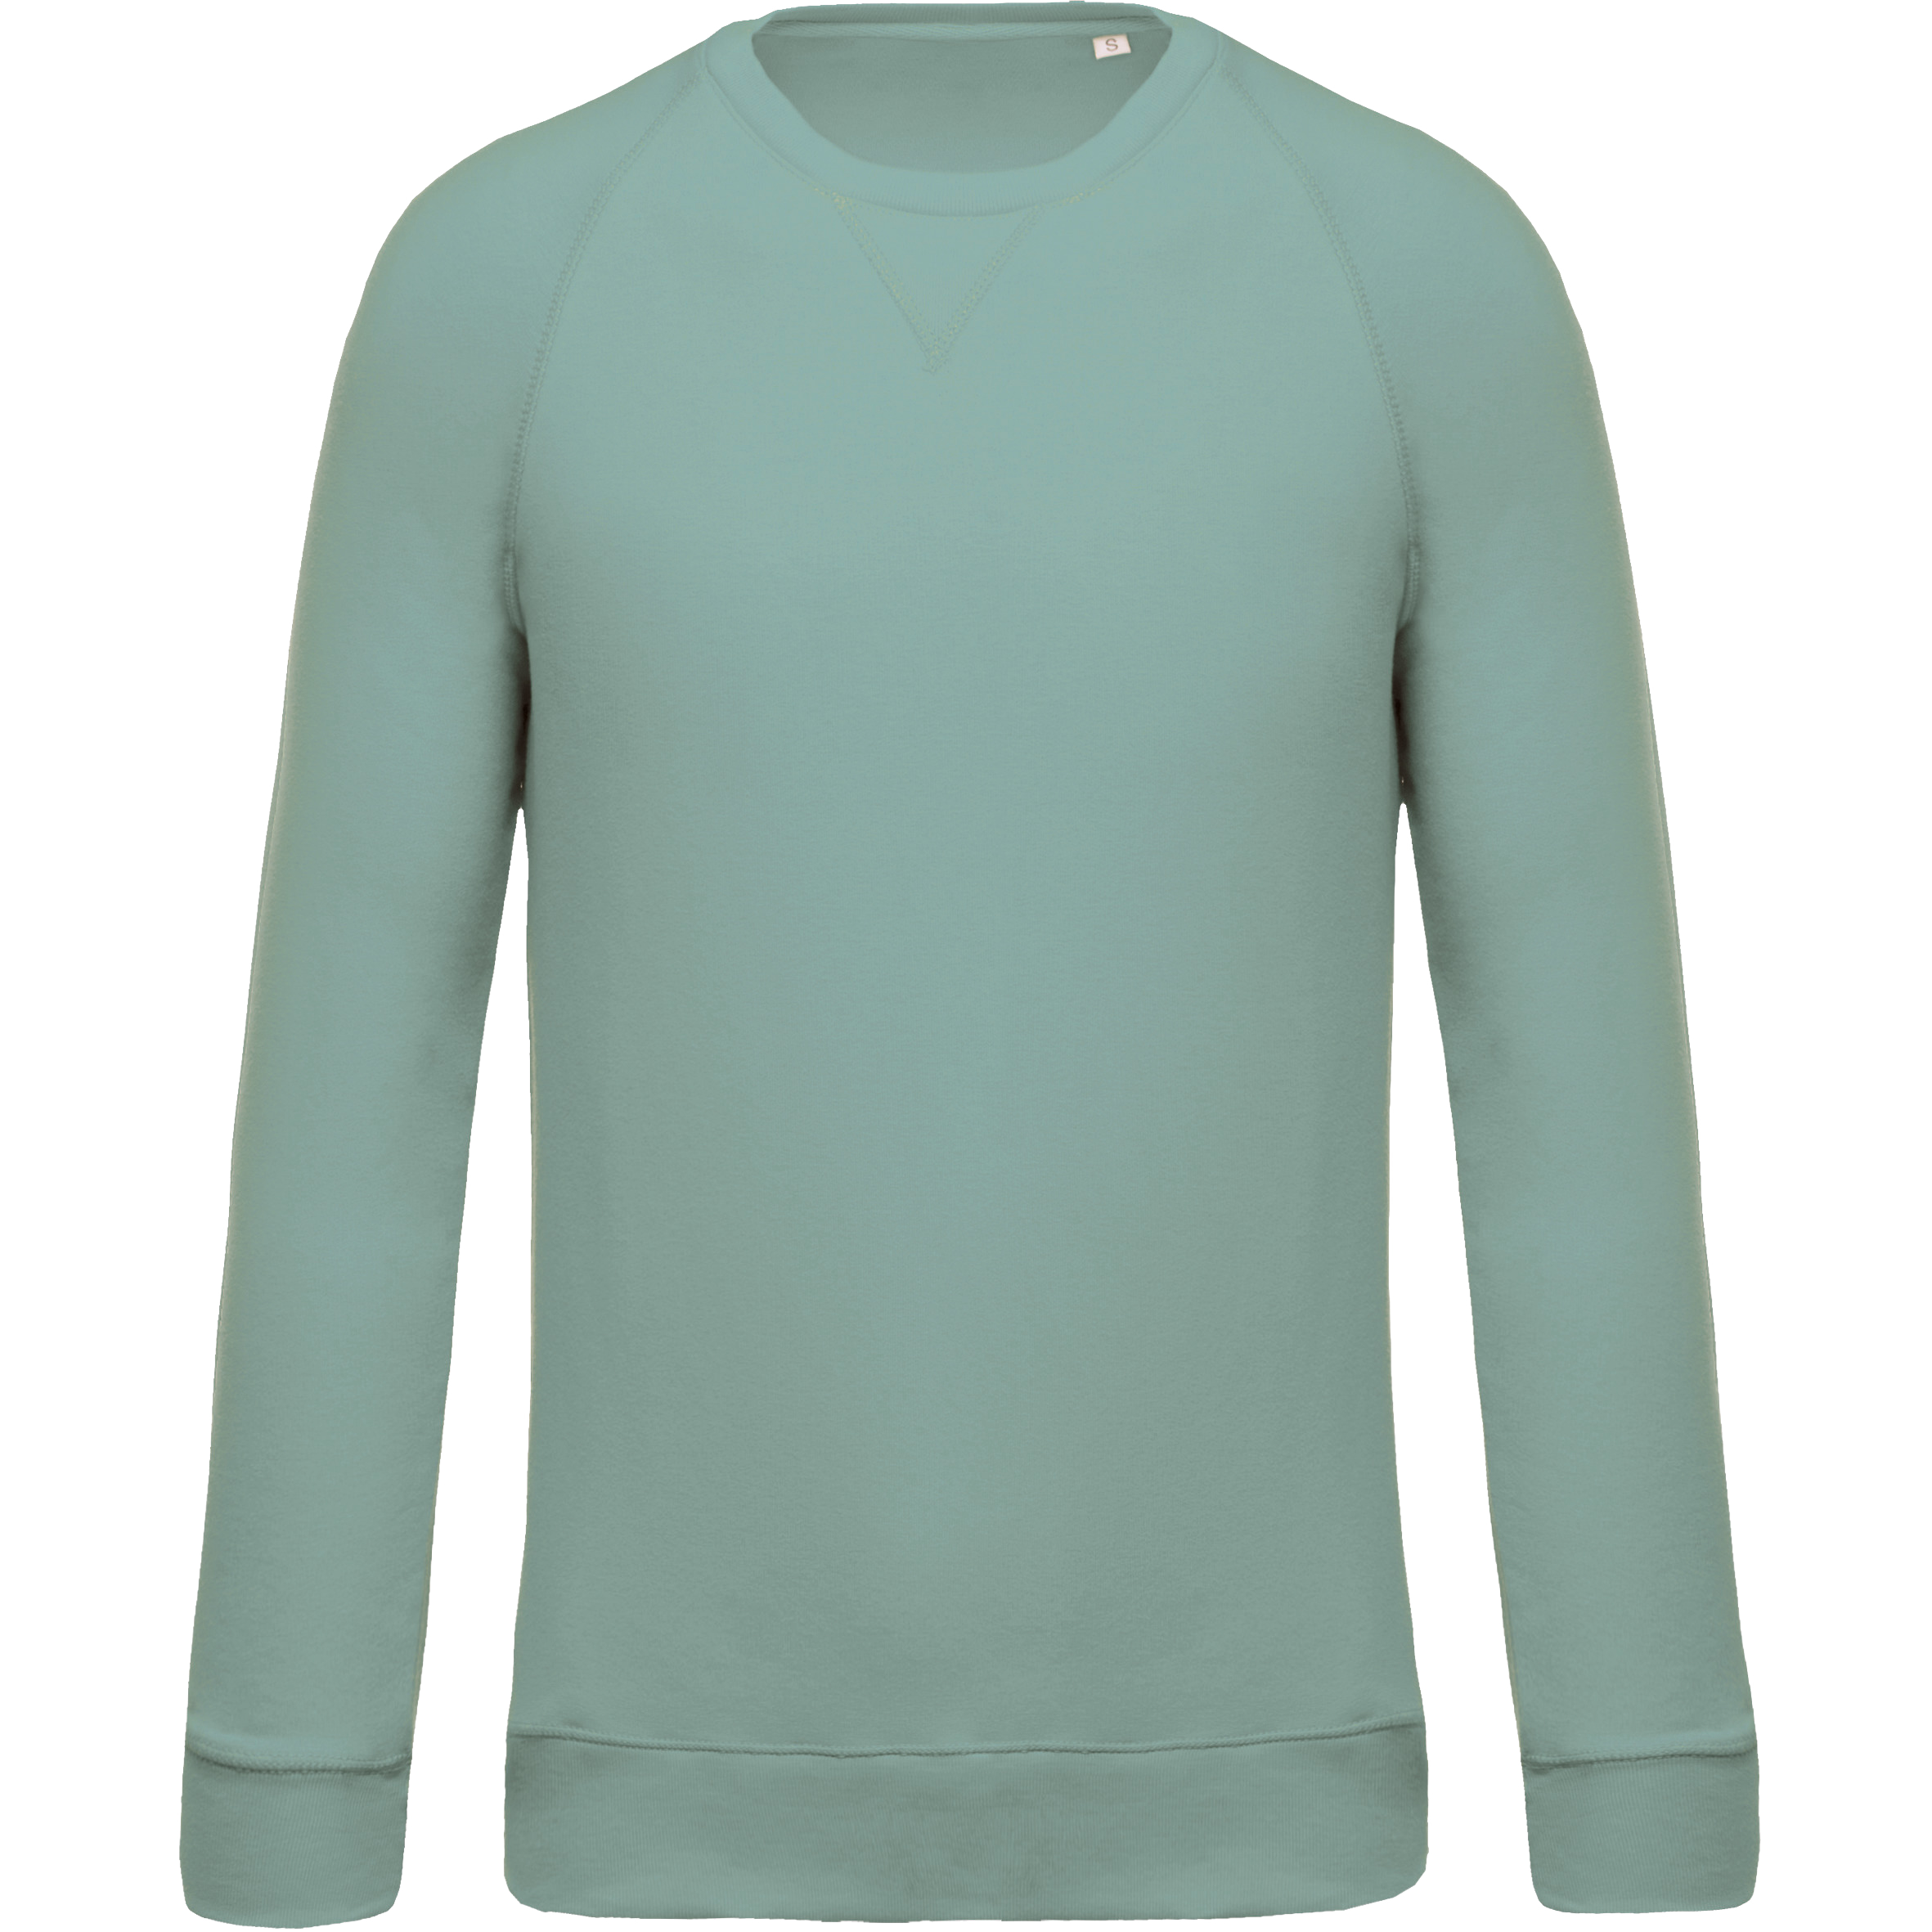 Sweat-shirt Bio col rond manches raglan homme - Sage imprimé et  personnalisé pour votre entreprise - Crafters